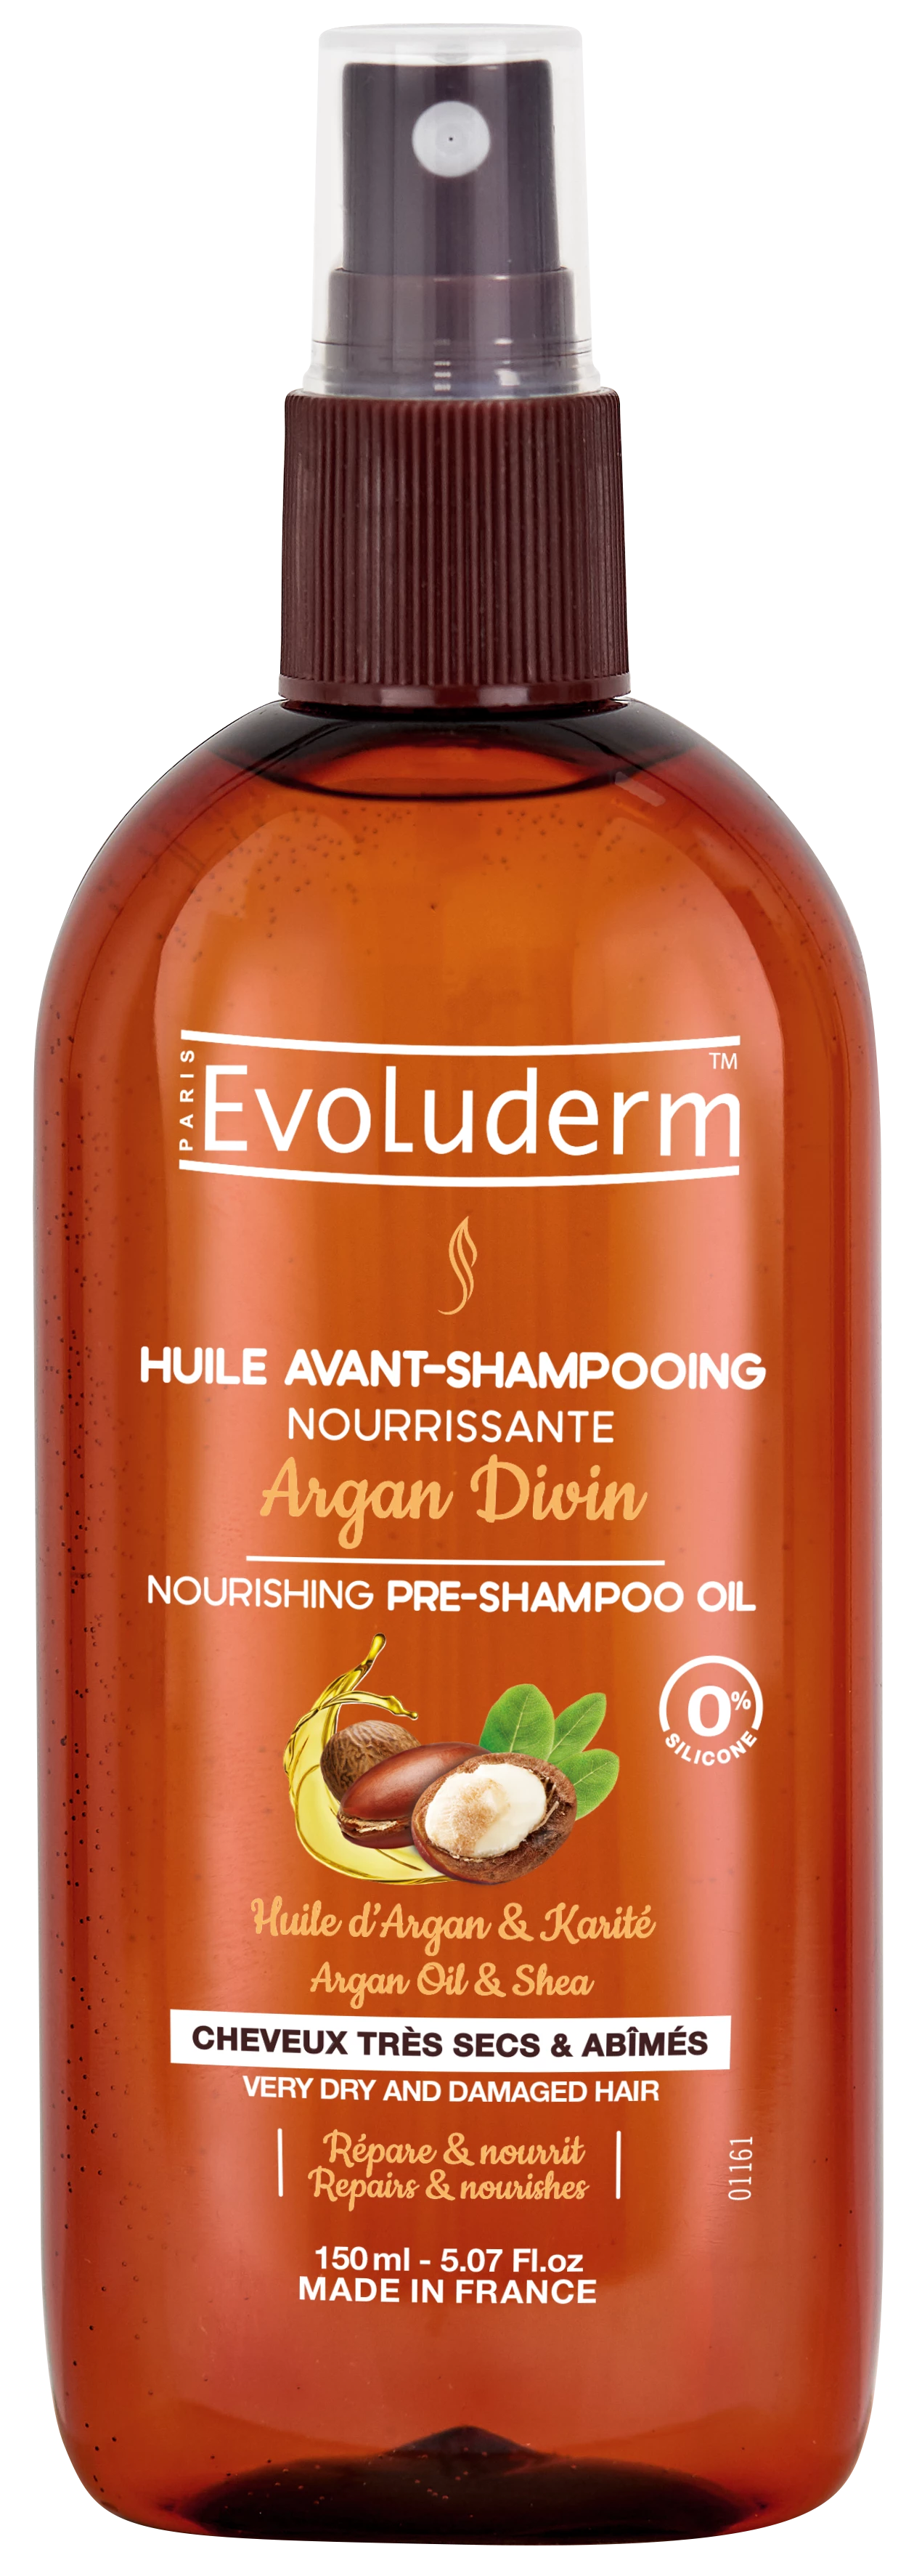 Pré-Shampoo Nutritivo com Óleo de Argan Divino, 150ml - EVOLUDERM